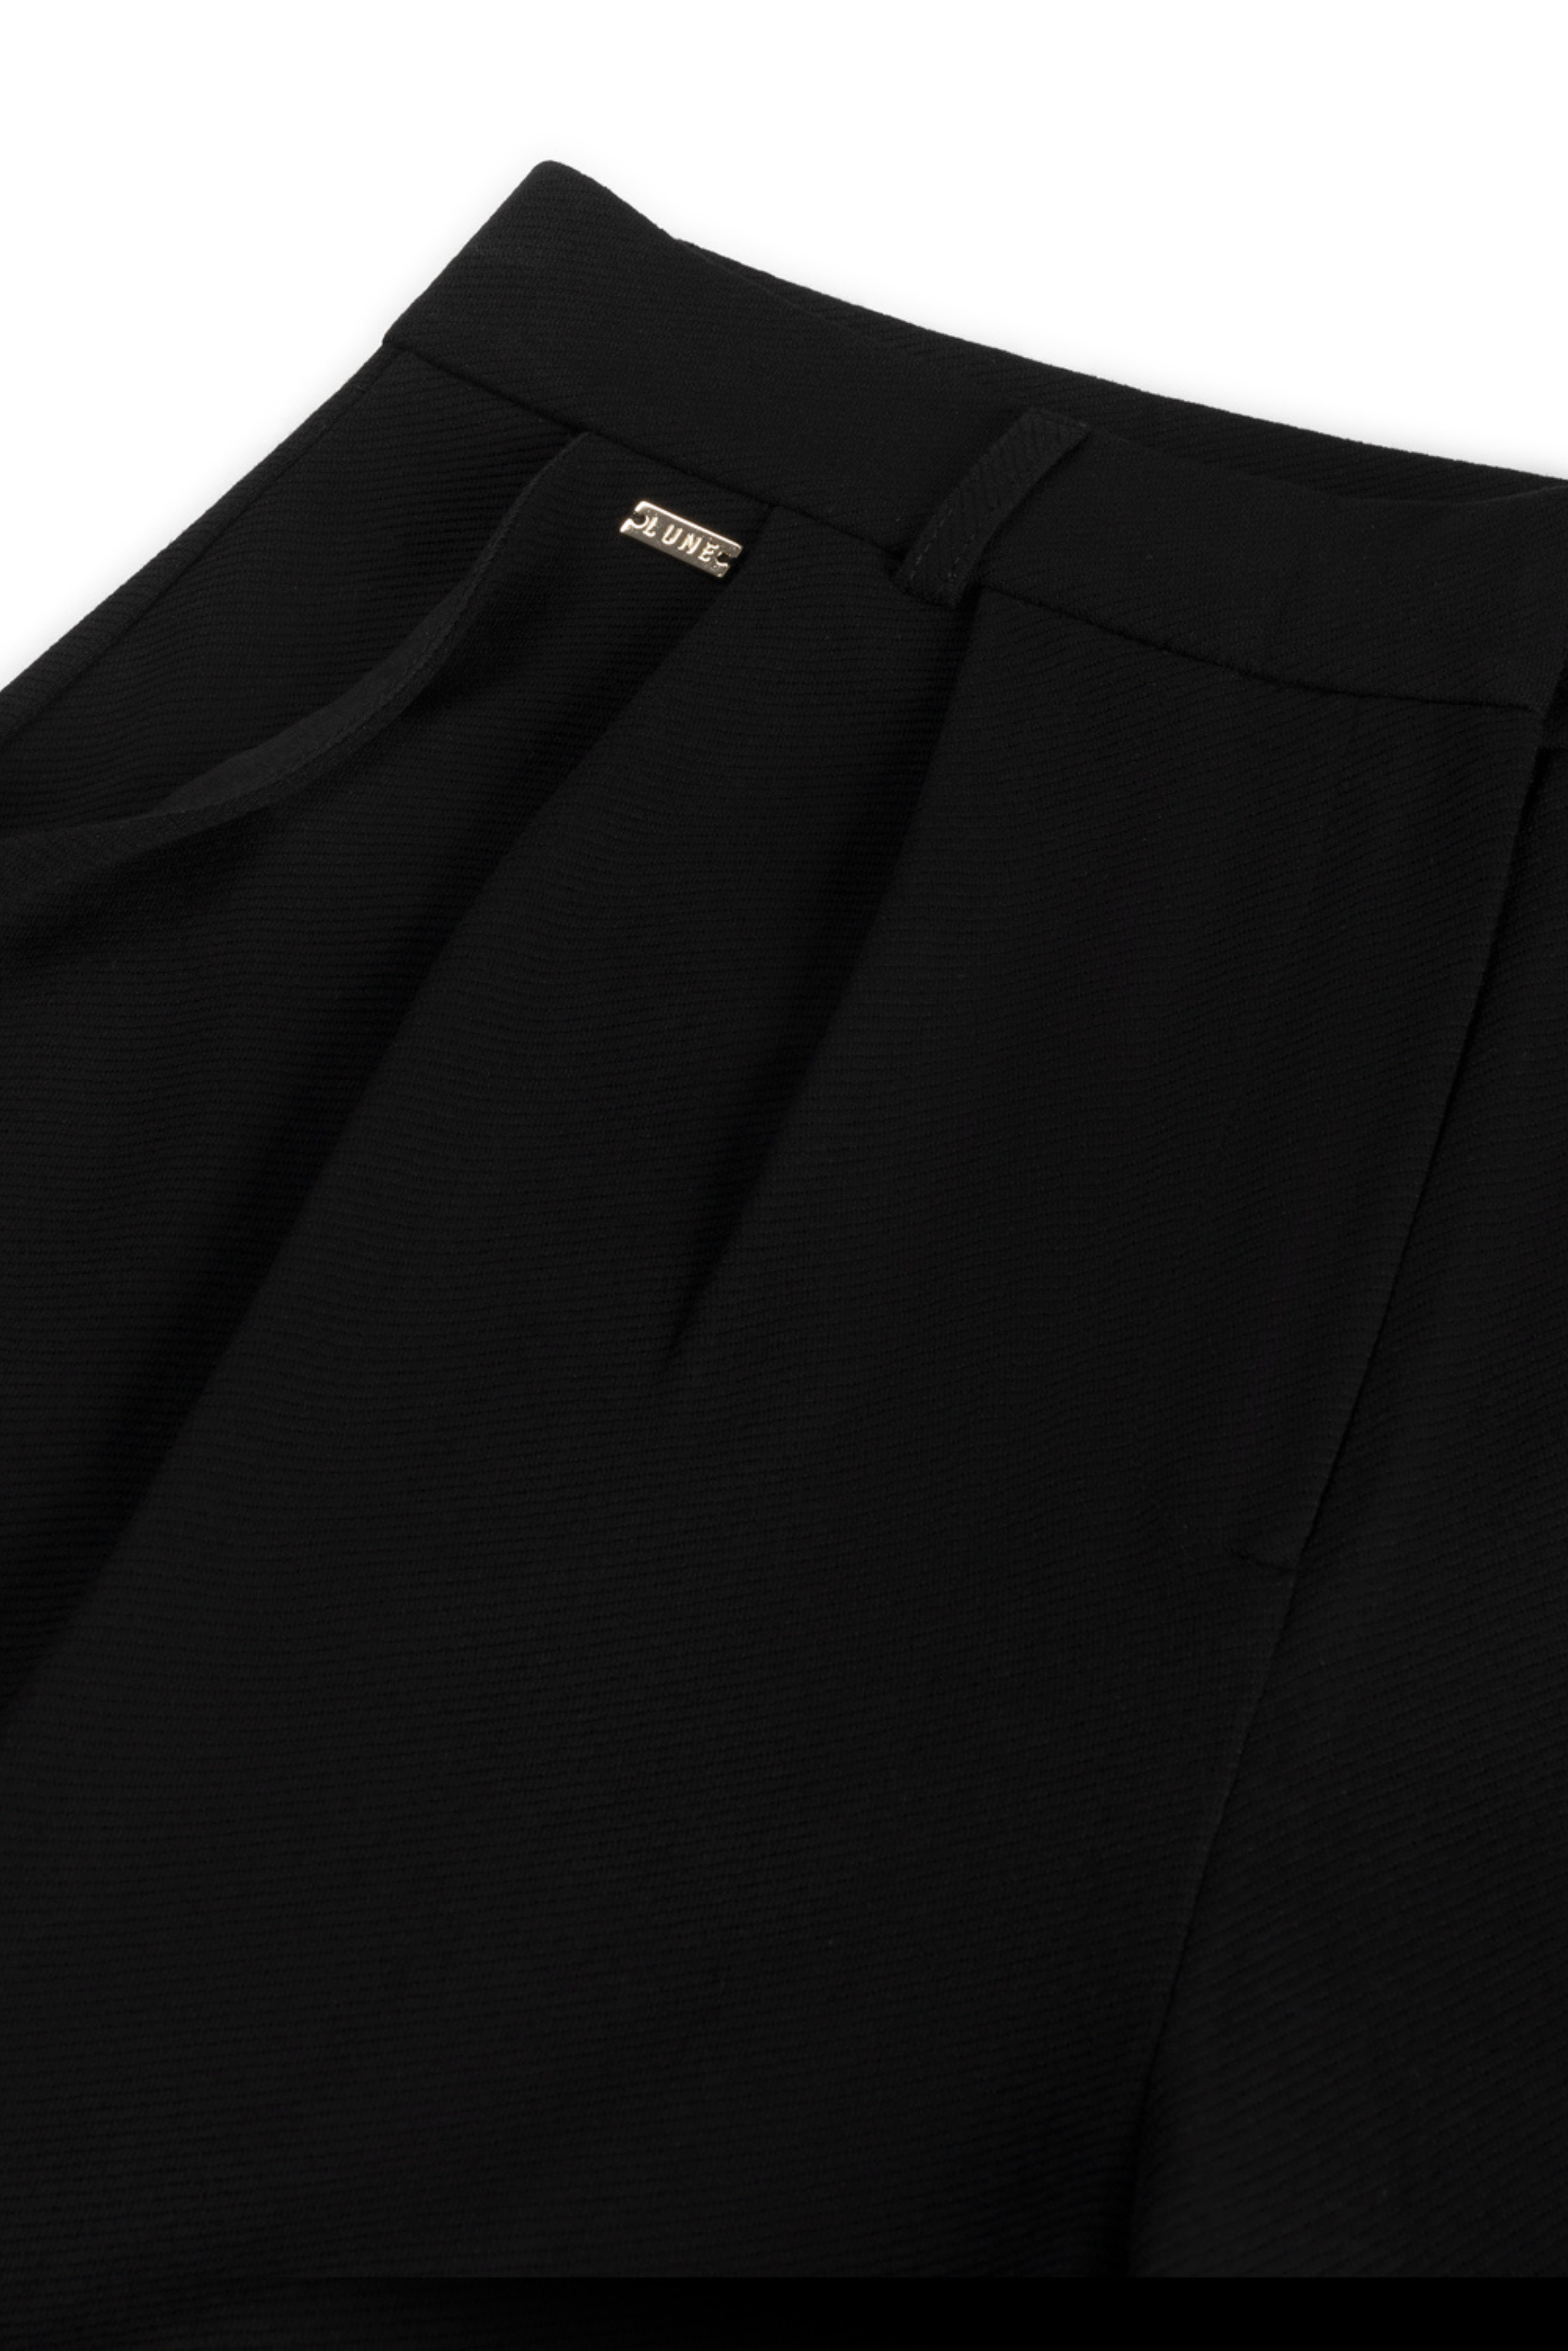 FOREST ESSENTIEL shorts - Black